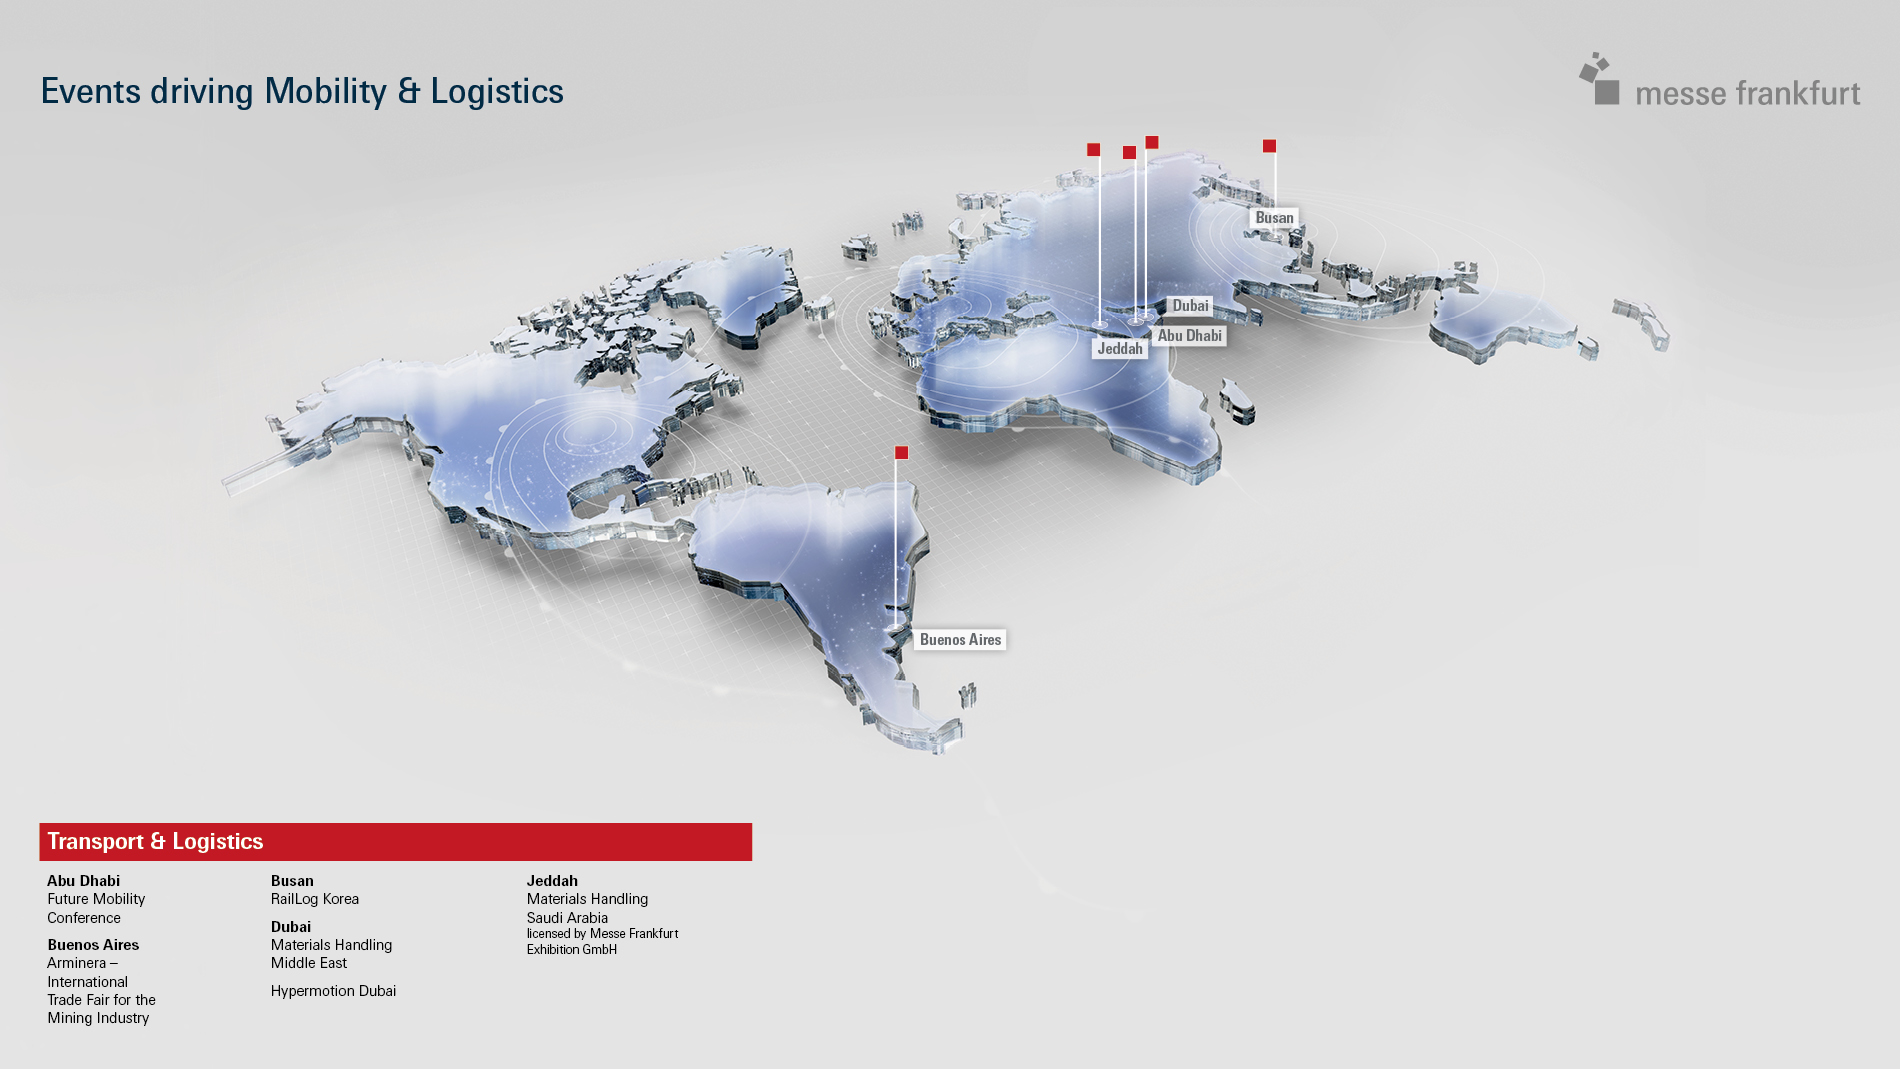 Weltkarte mit Transport & Logistics-Veranstaltungsorten